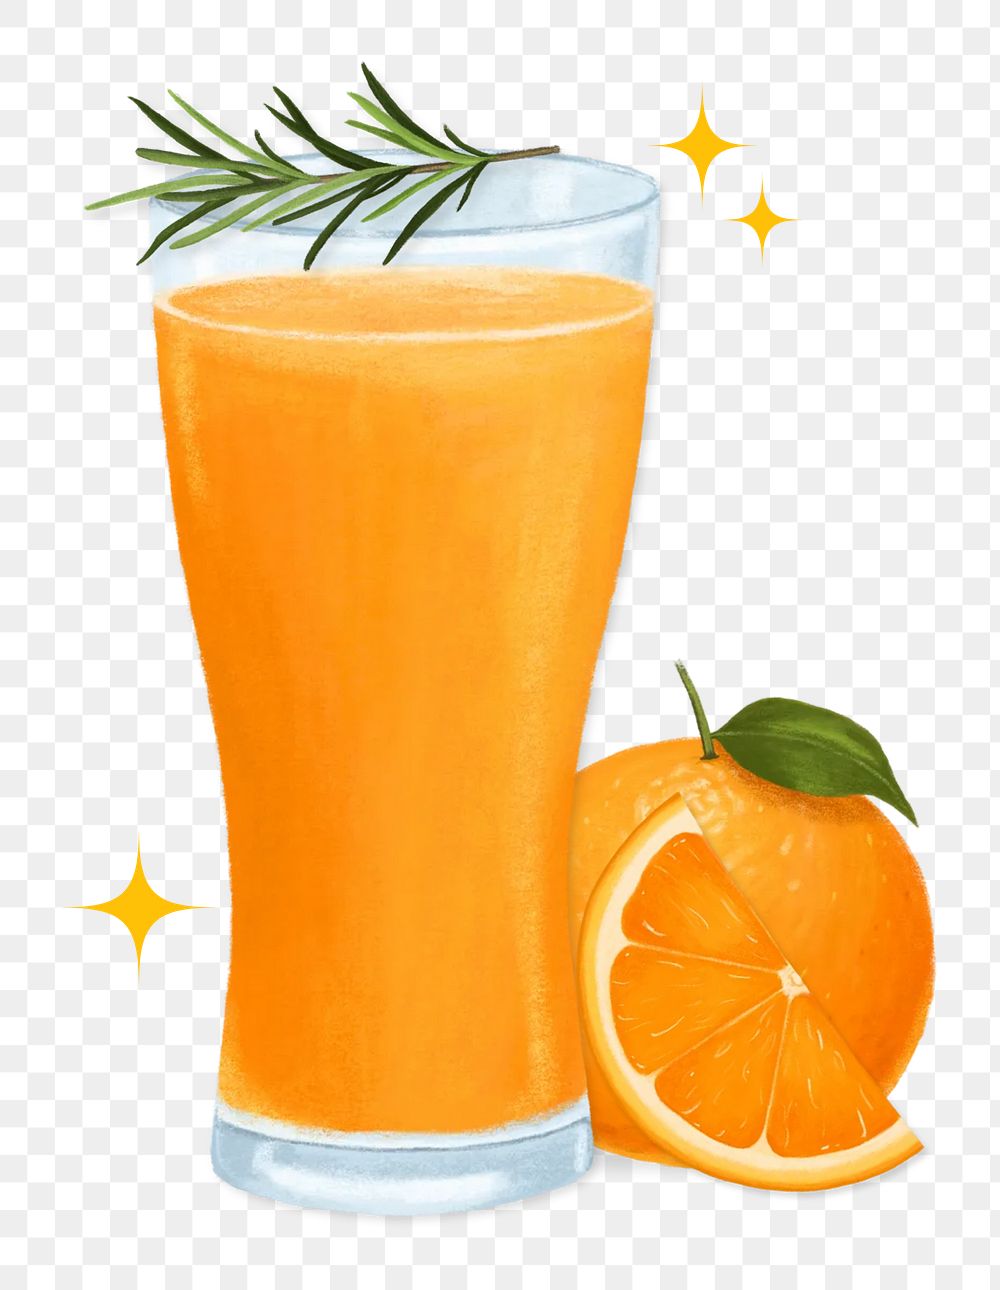 Orange juice png sticker, transparent background